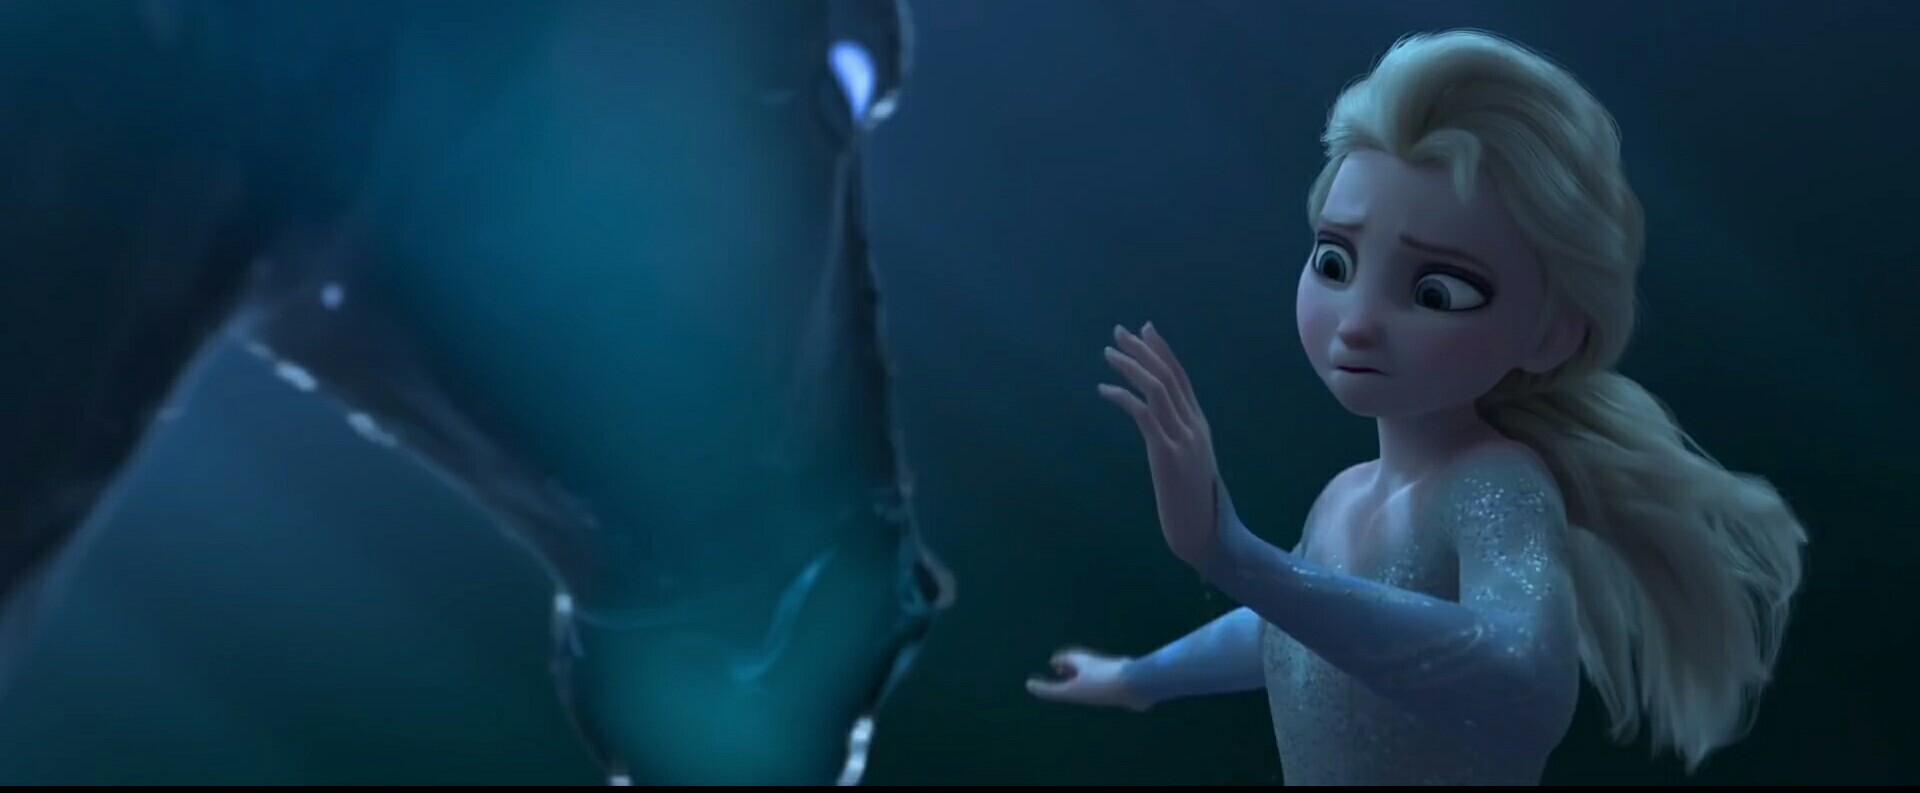 Frozen 2 trailer breakdown review